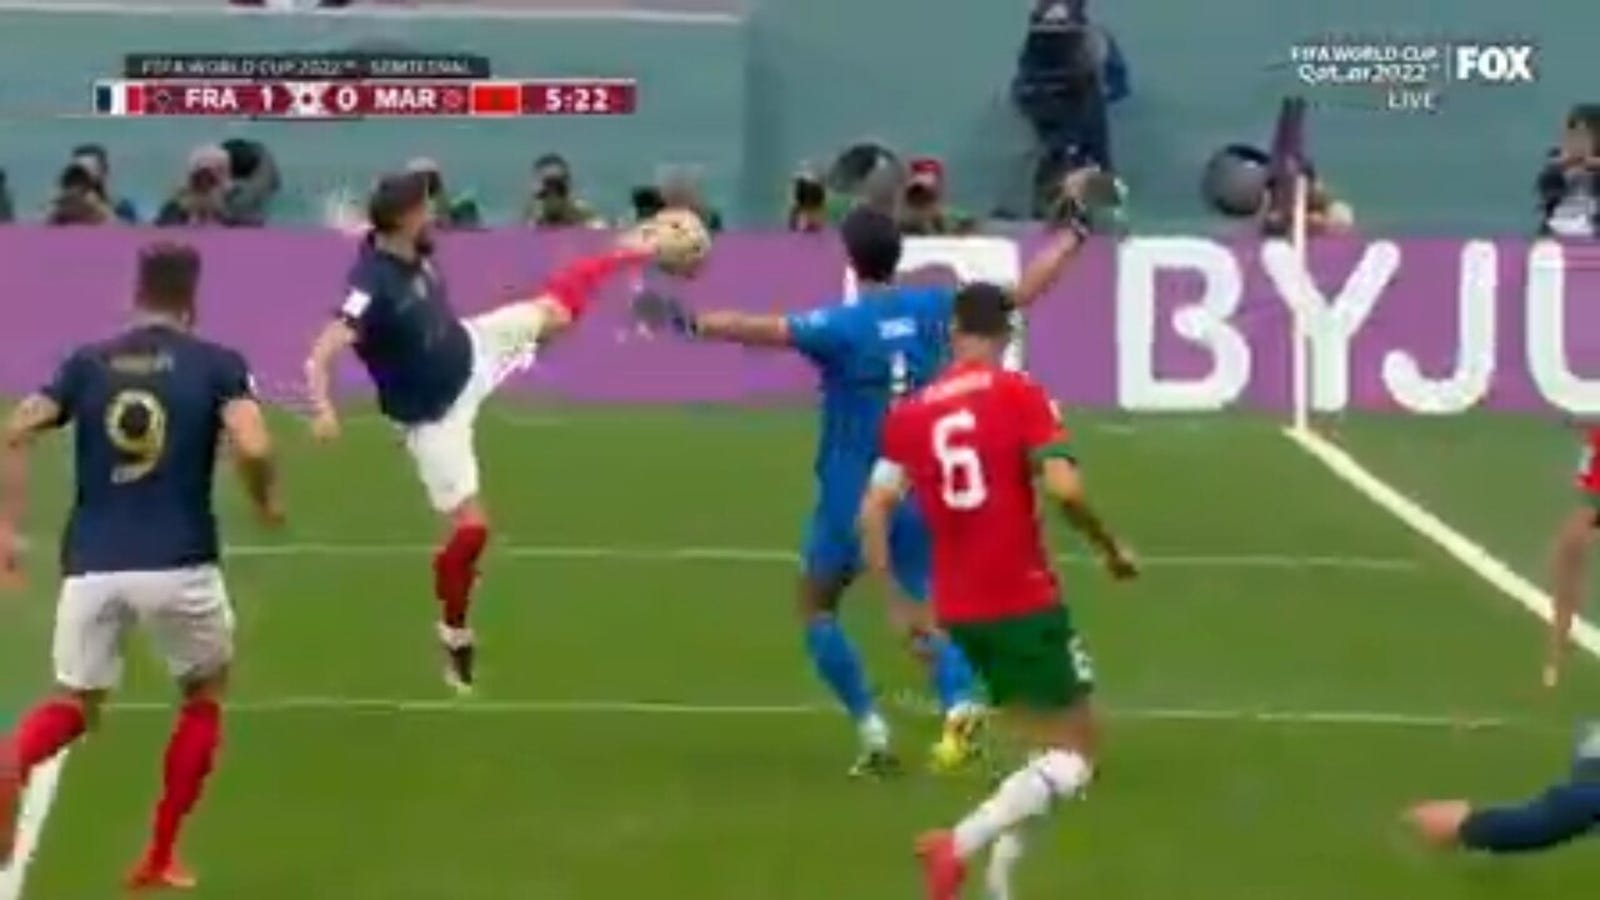 France's Theo Hernandez scores goal vs. Morocco in 5'